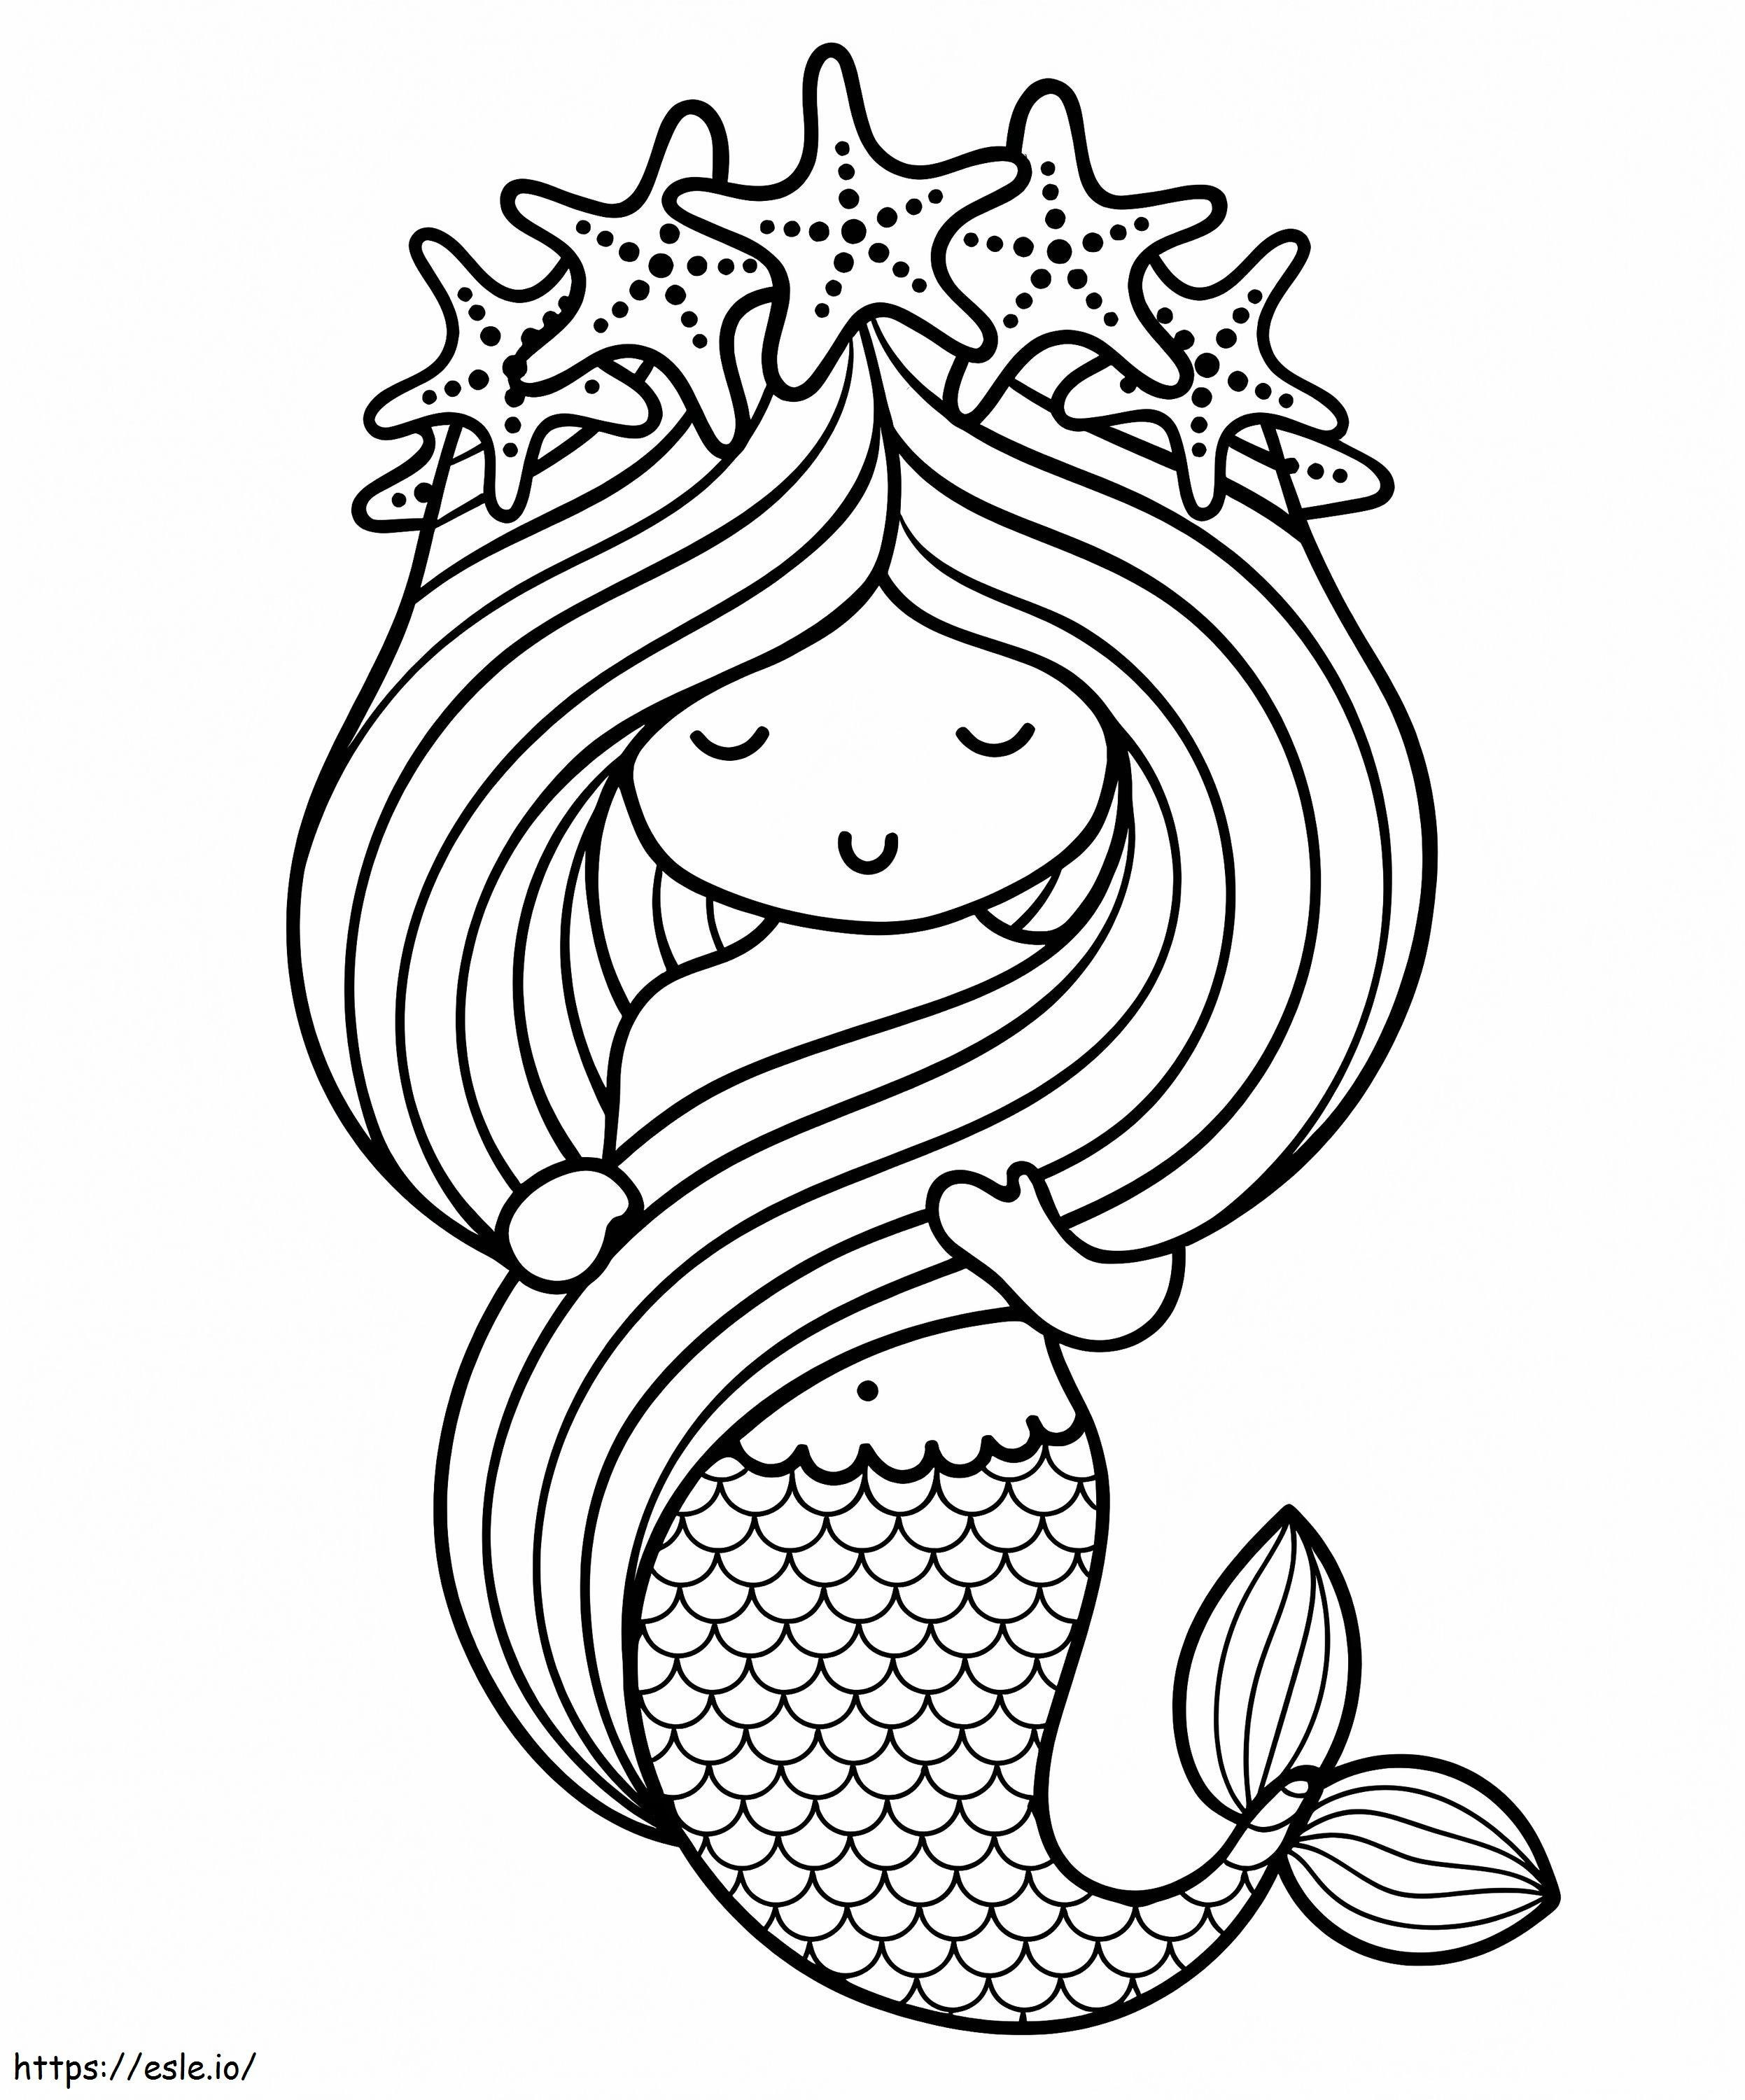 Mermaid 8 coloring page